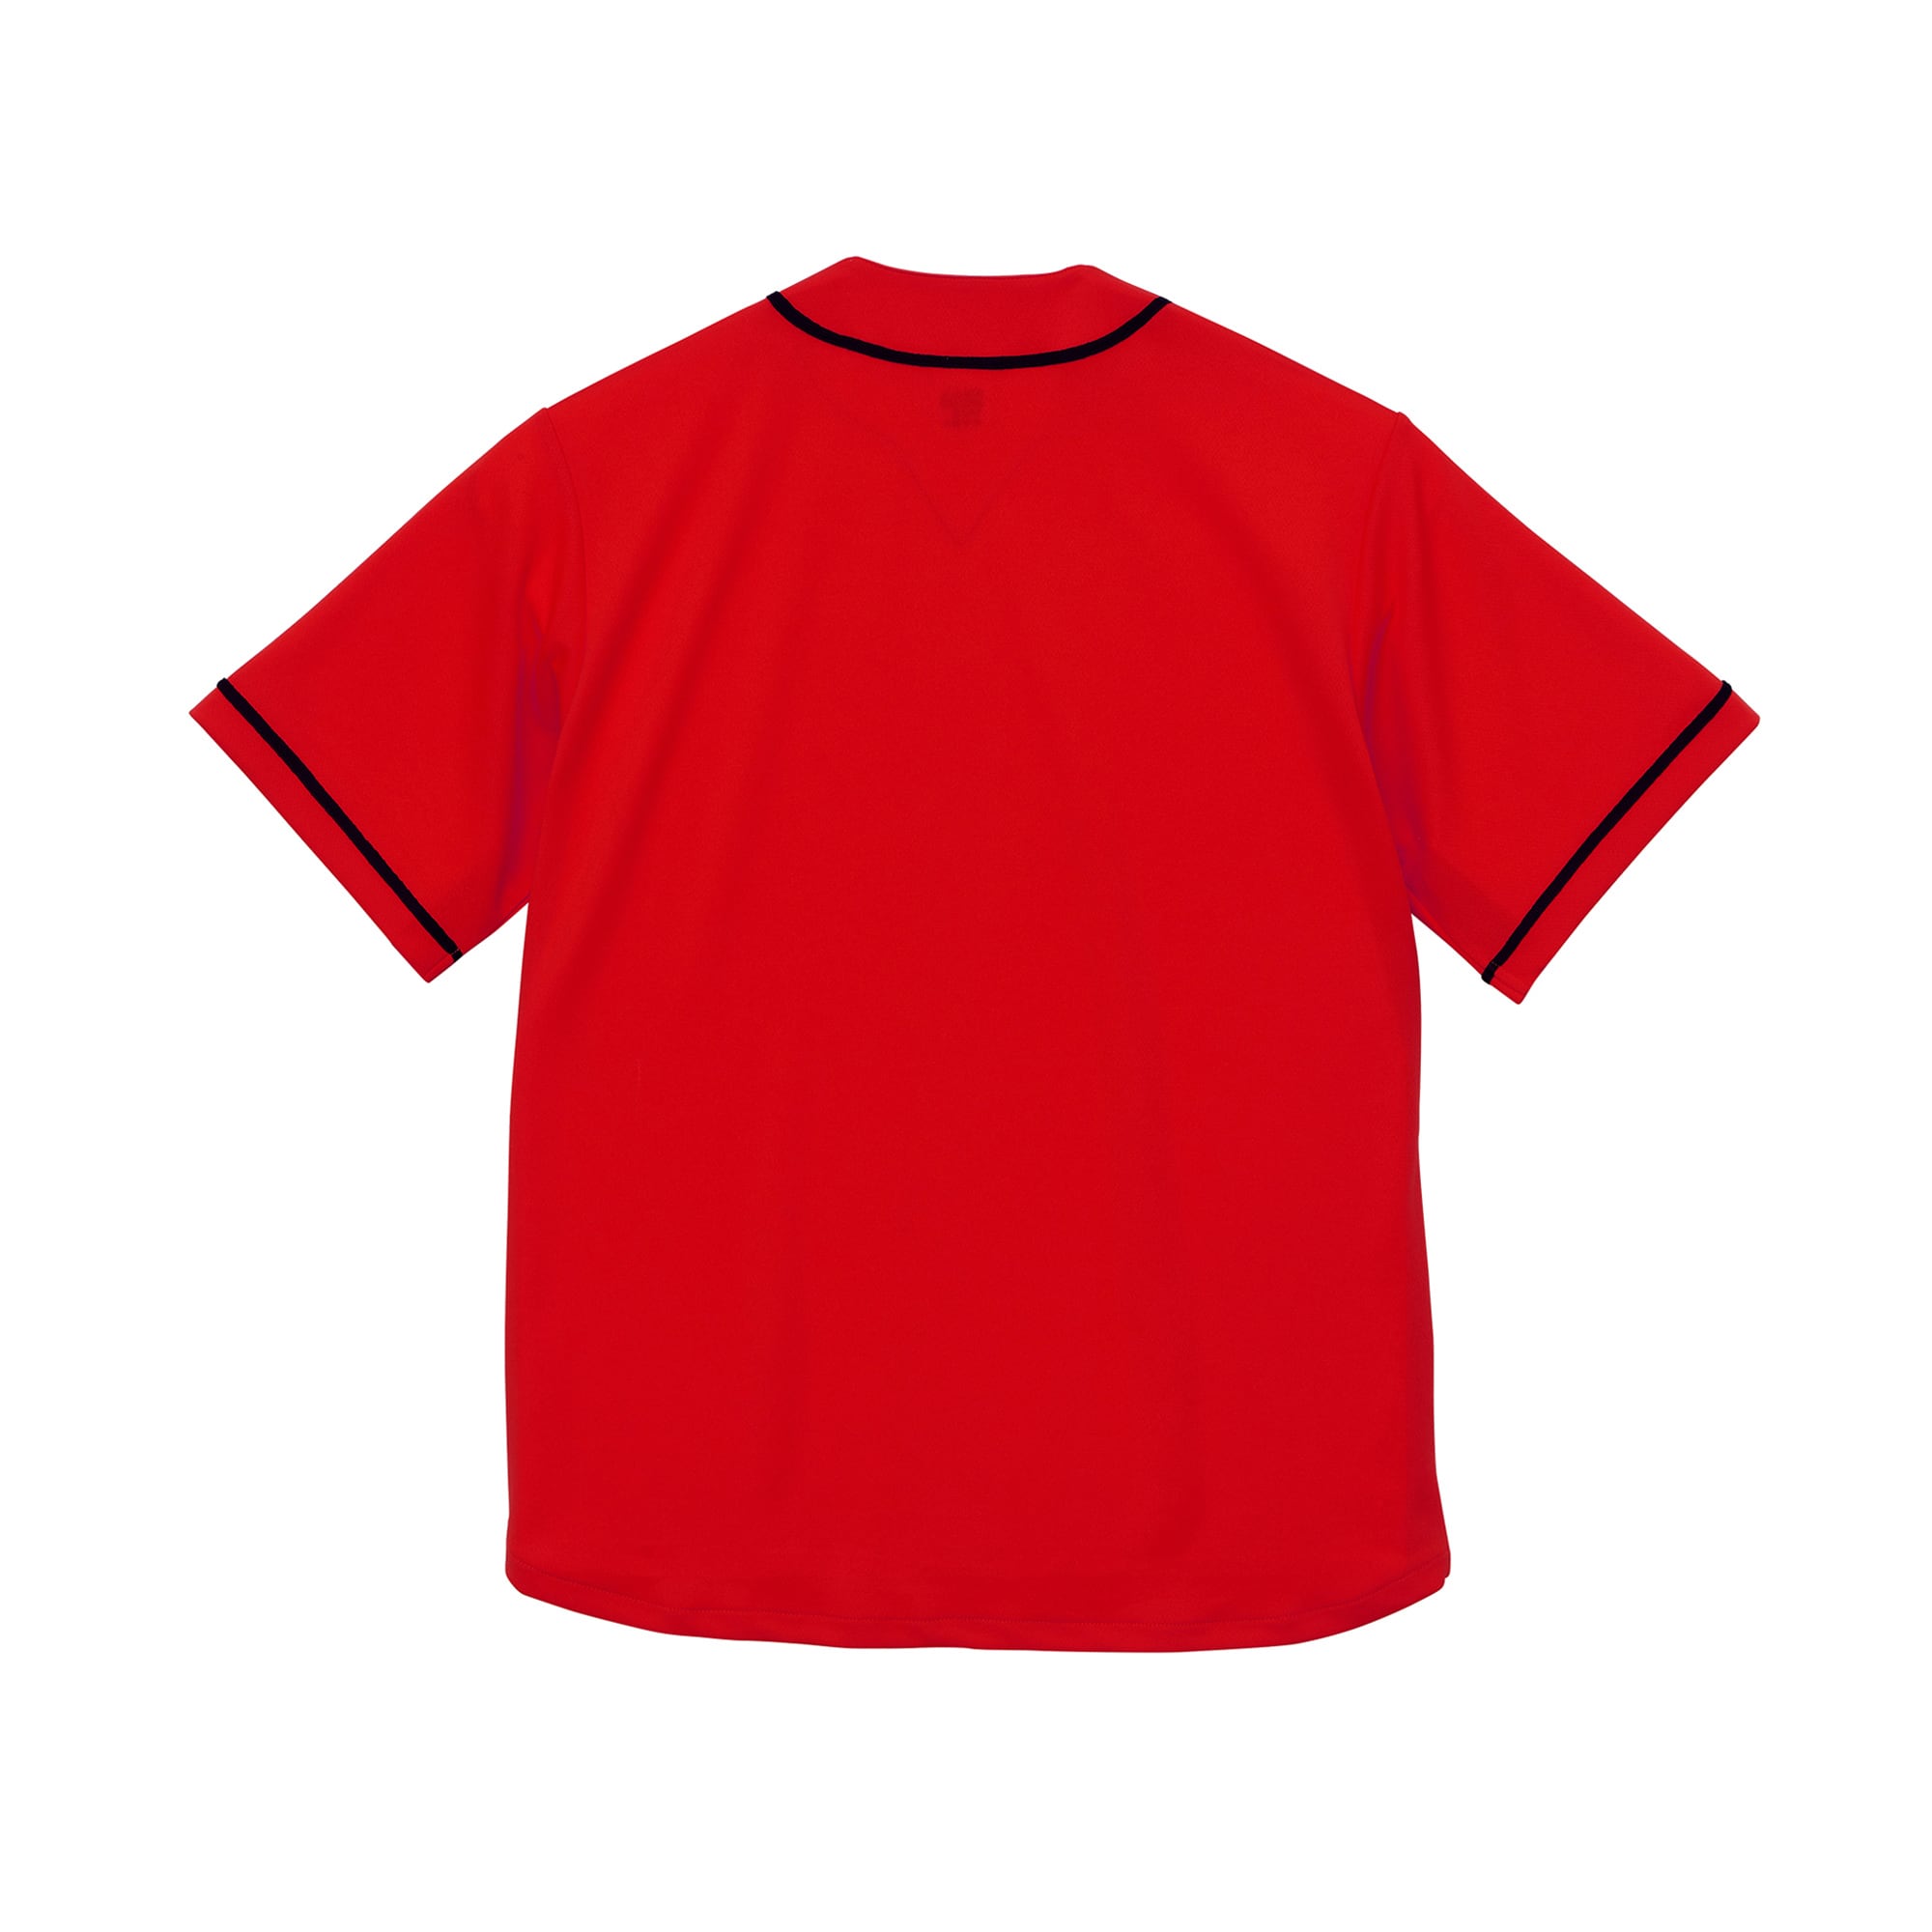 United Athle ユナイテッドアスレ ドライ ベースボールシャツ (品番5982-01)